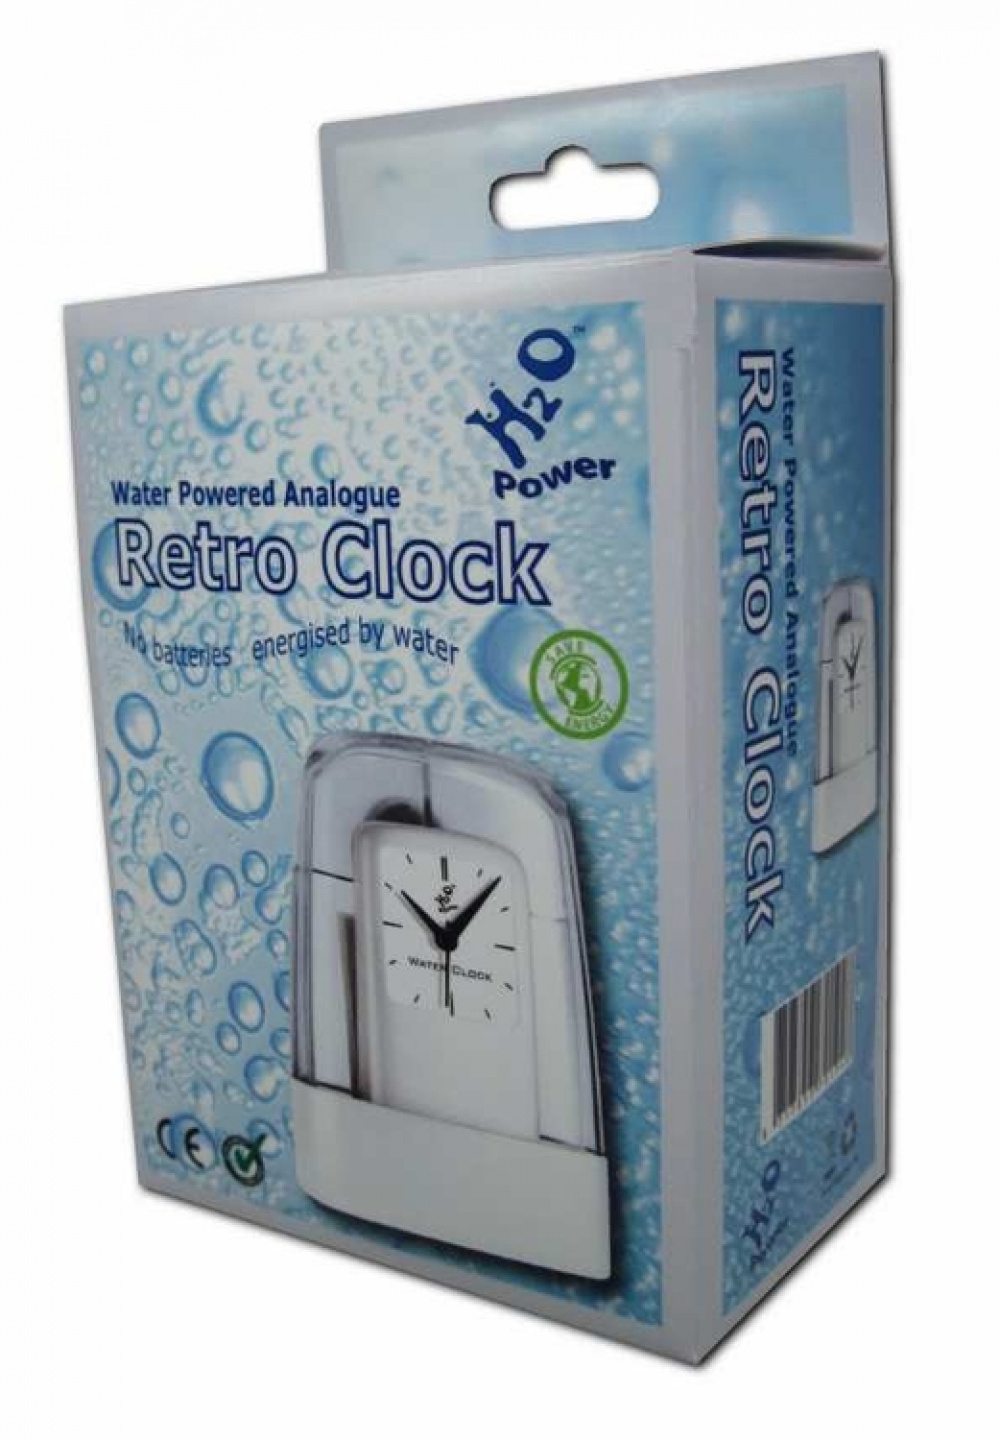 UTGÅTT H2O Analogue Retro Clock i gruppen Hemmet / Miljösmart hos SmartaSaker.se (11587)